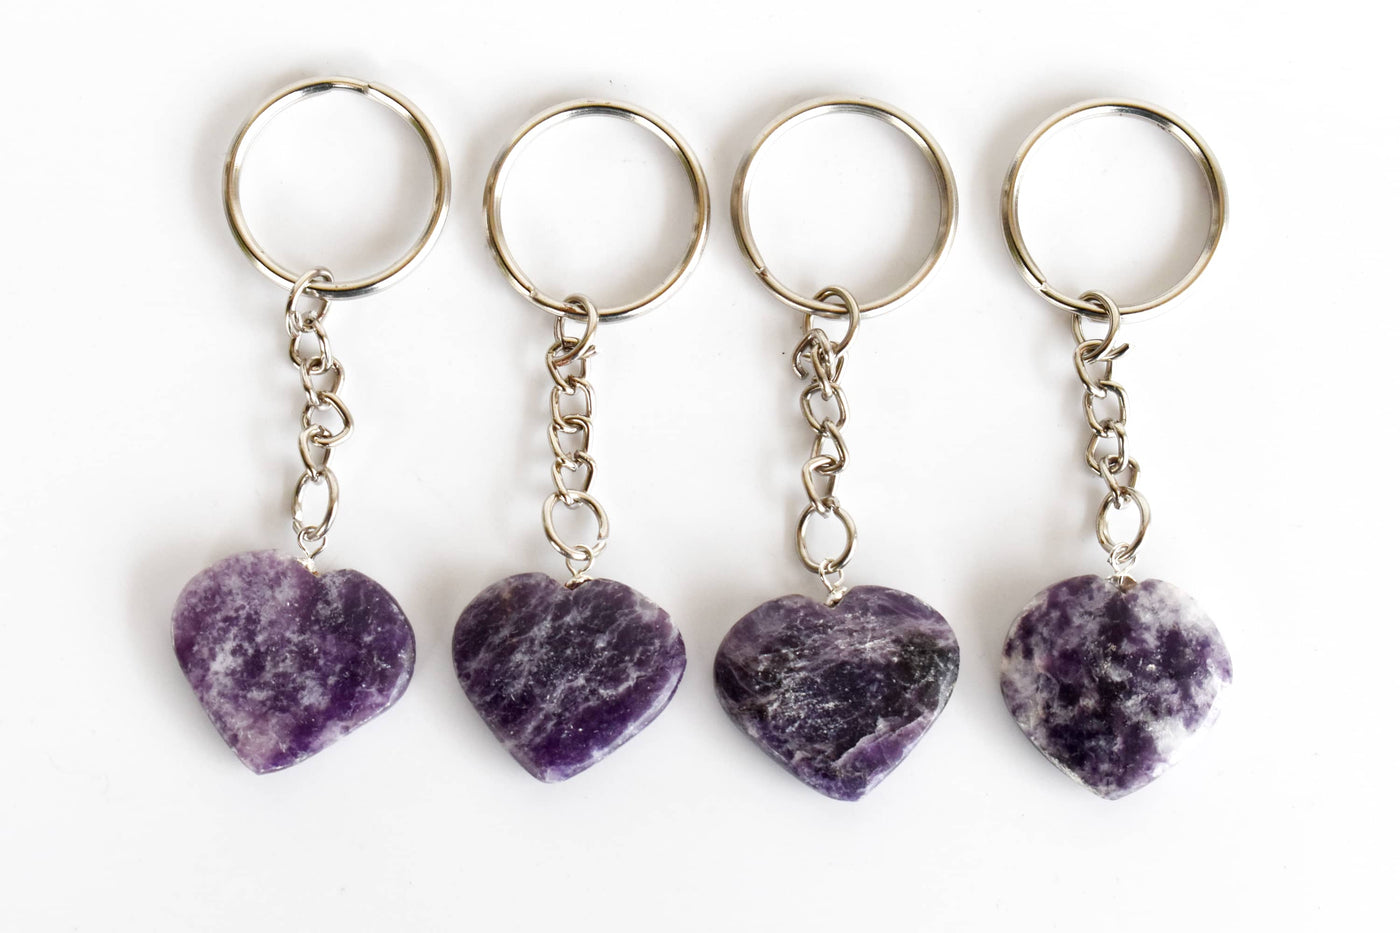 Lepidolite Key Chain, Gemstone Keychain Crystal Key Ring (Joy and Relaxation)